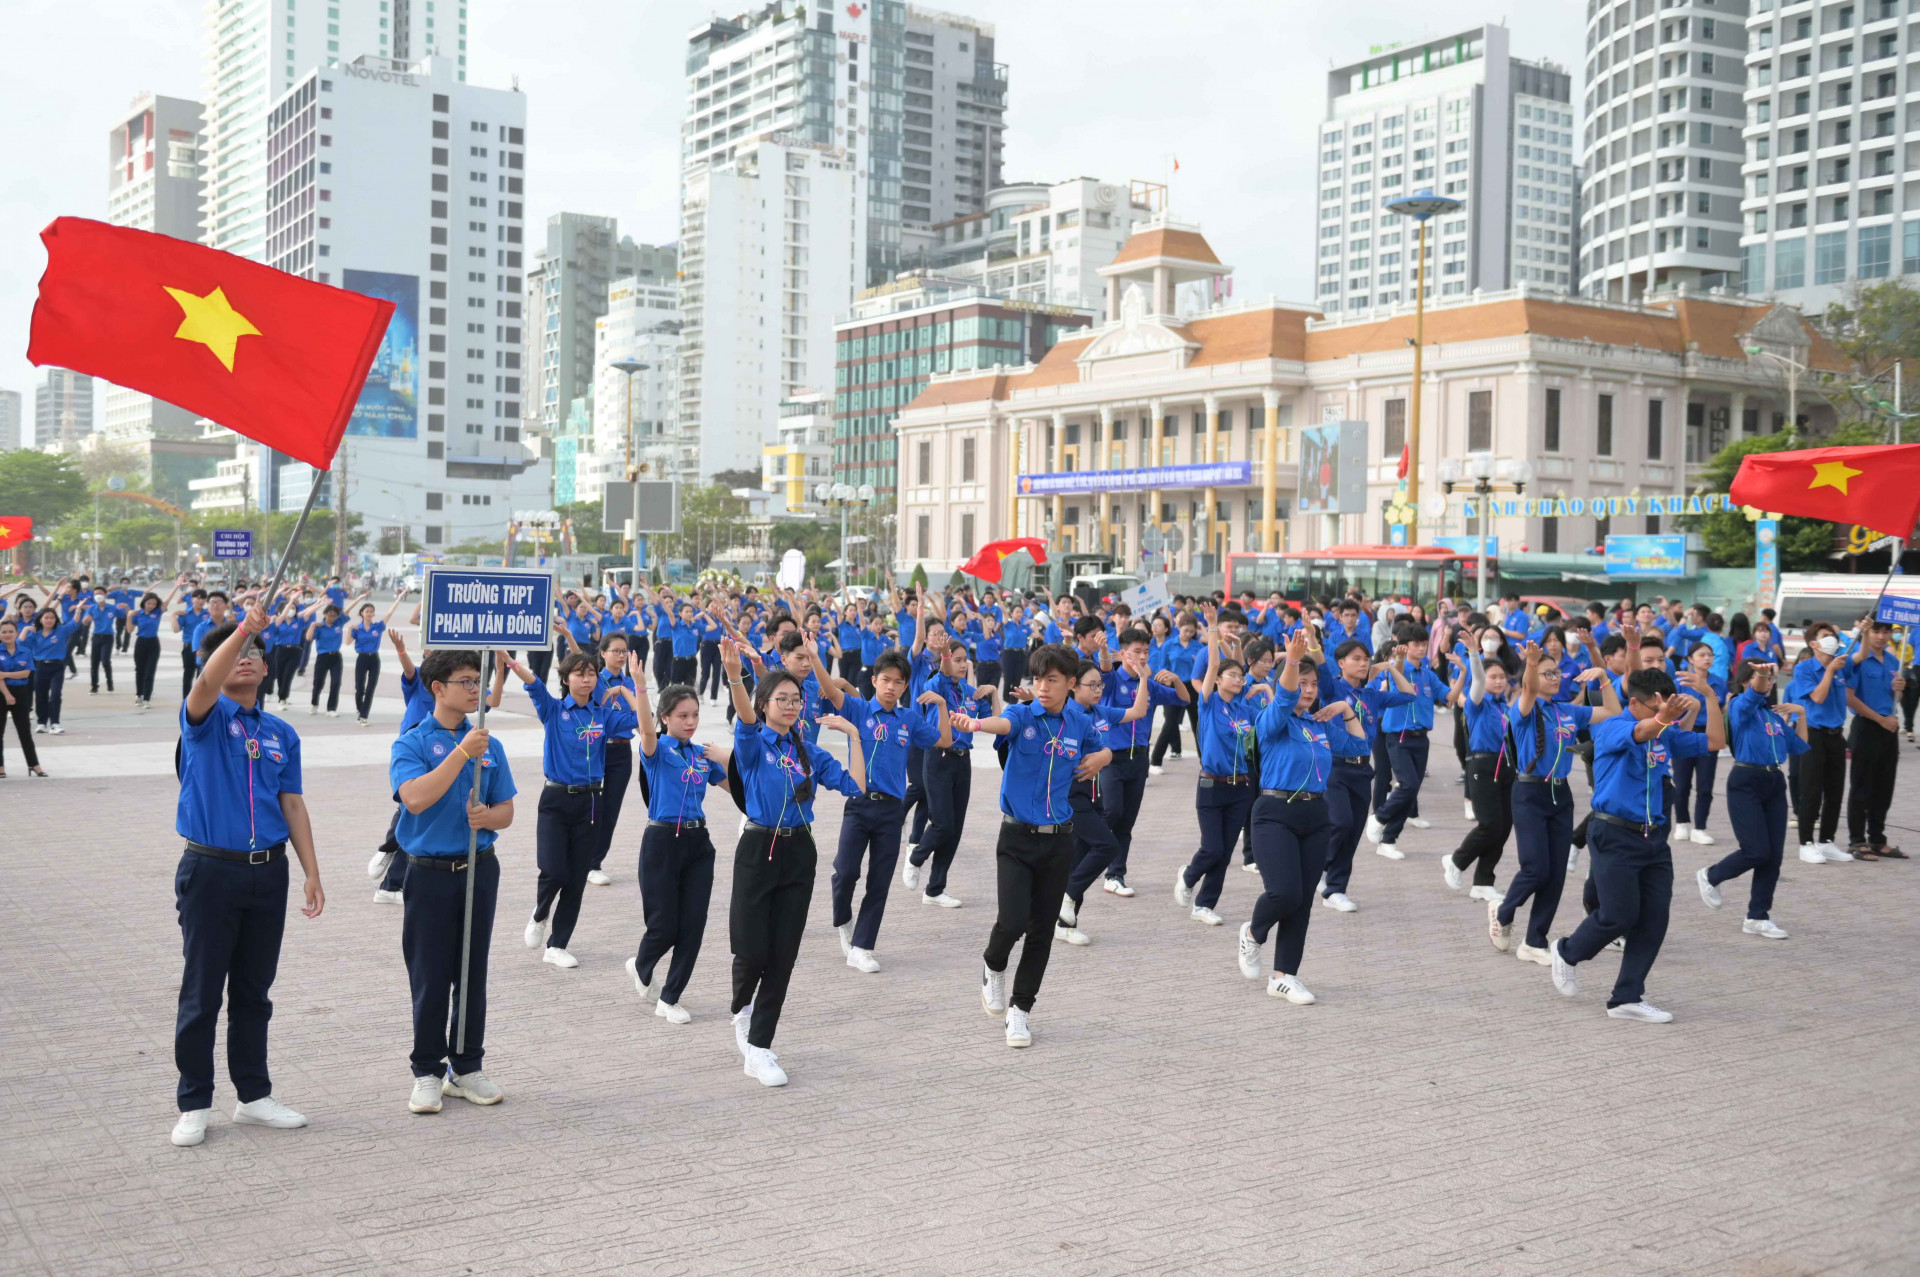 Các đoàn viên, thanh niên thành phố tham gia đồng diễn múa hát tập thể, múa dân vũ chào mừng kỷ niệm 370 năm xây dựng và phát triển tỉnh